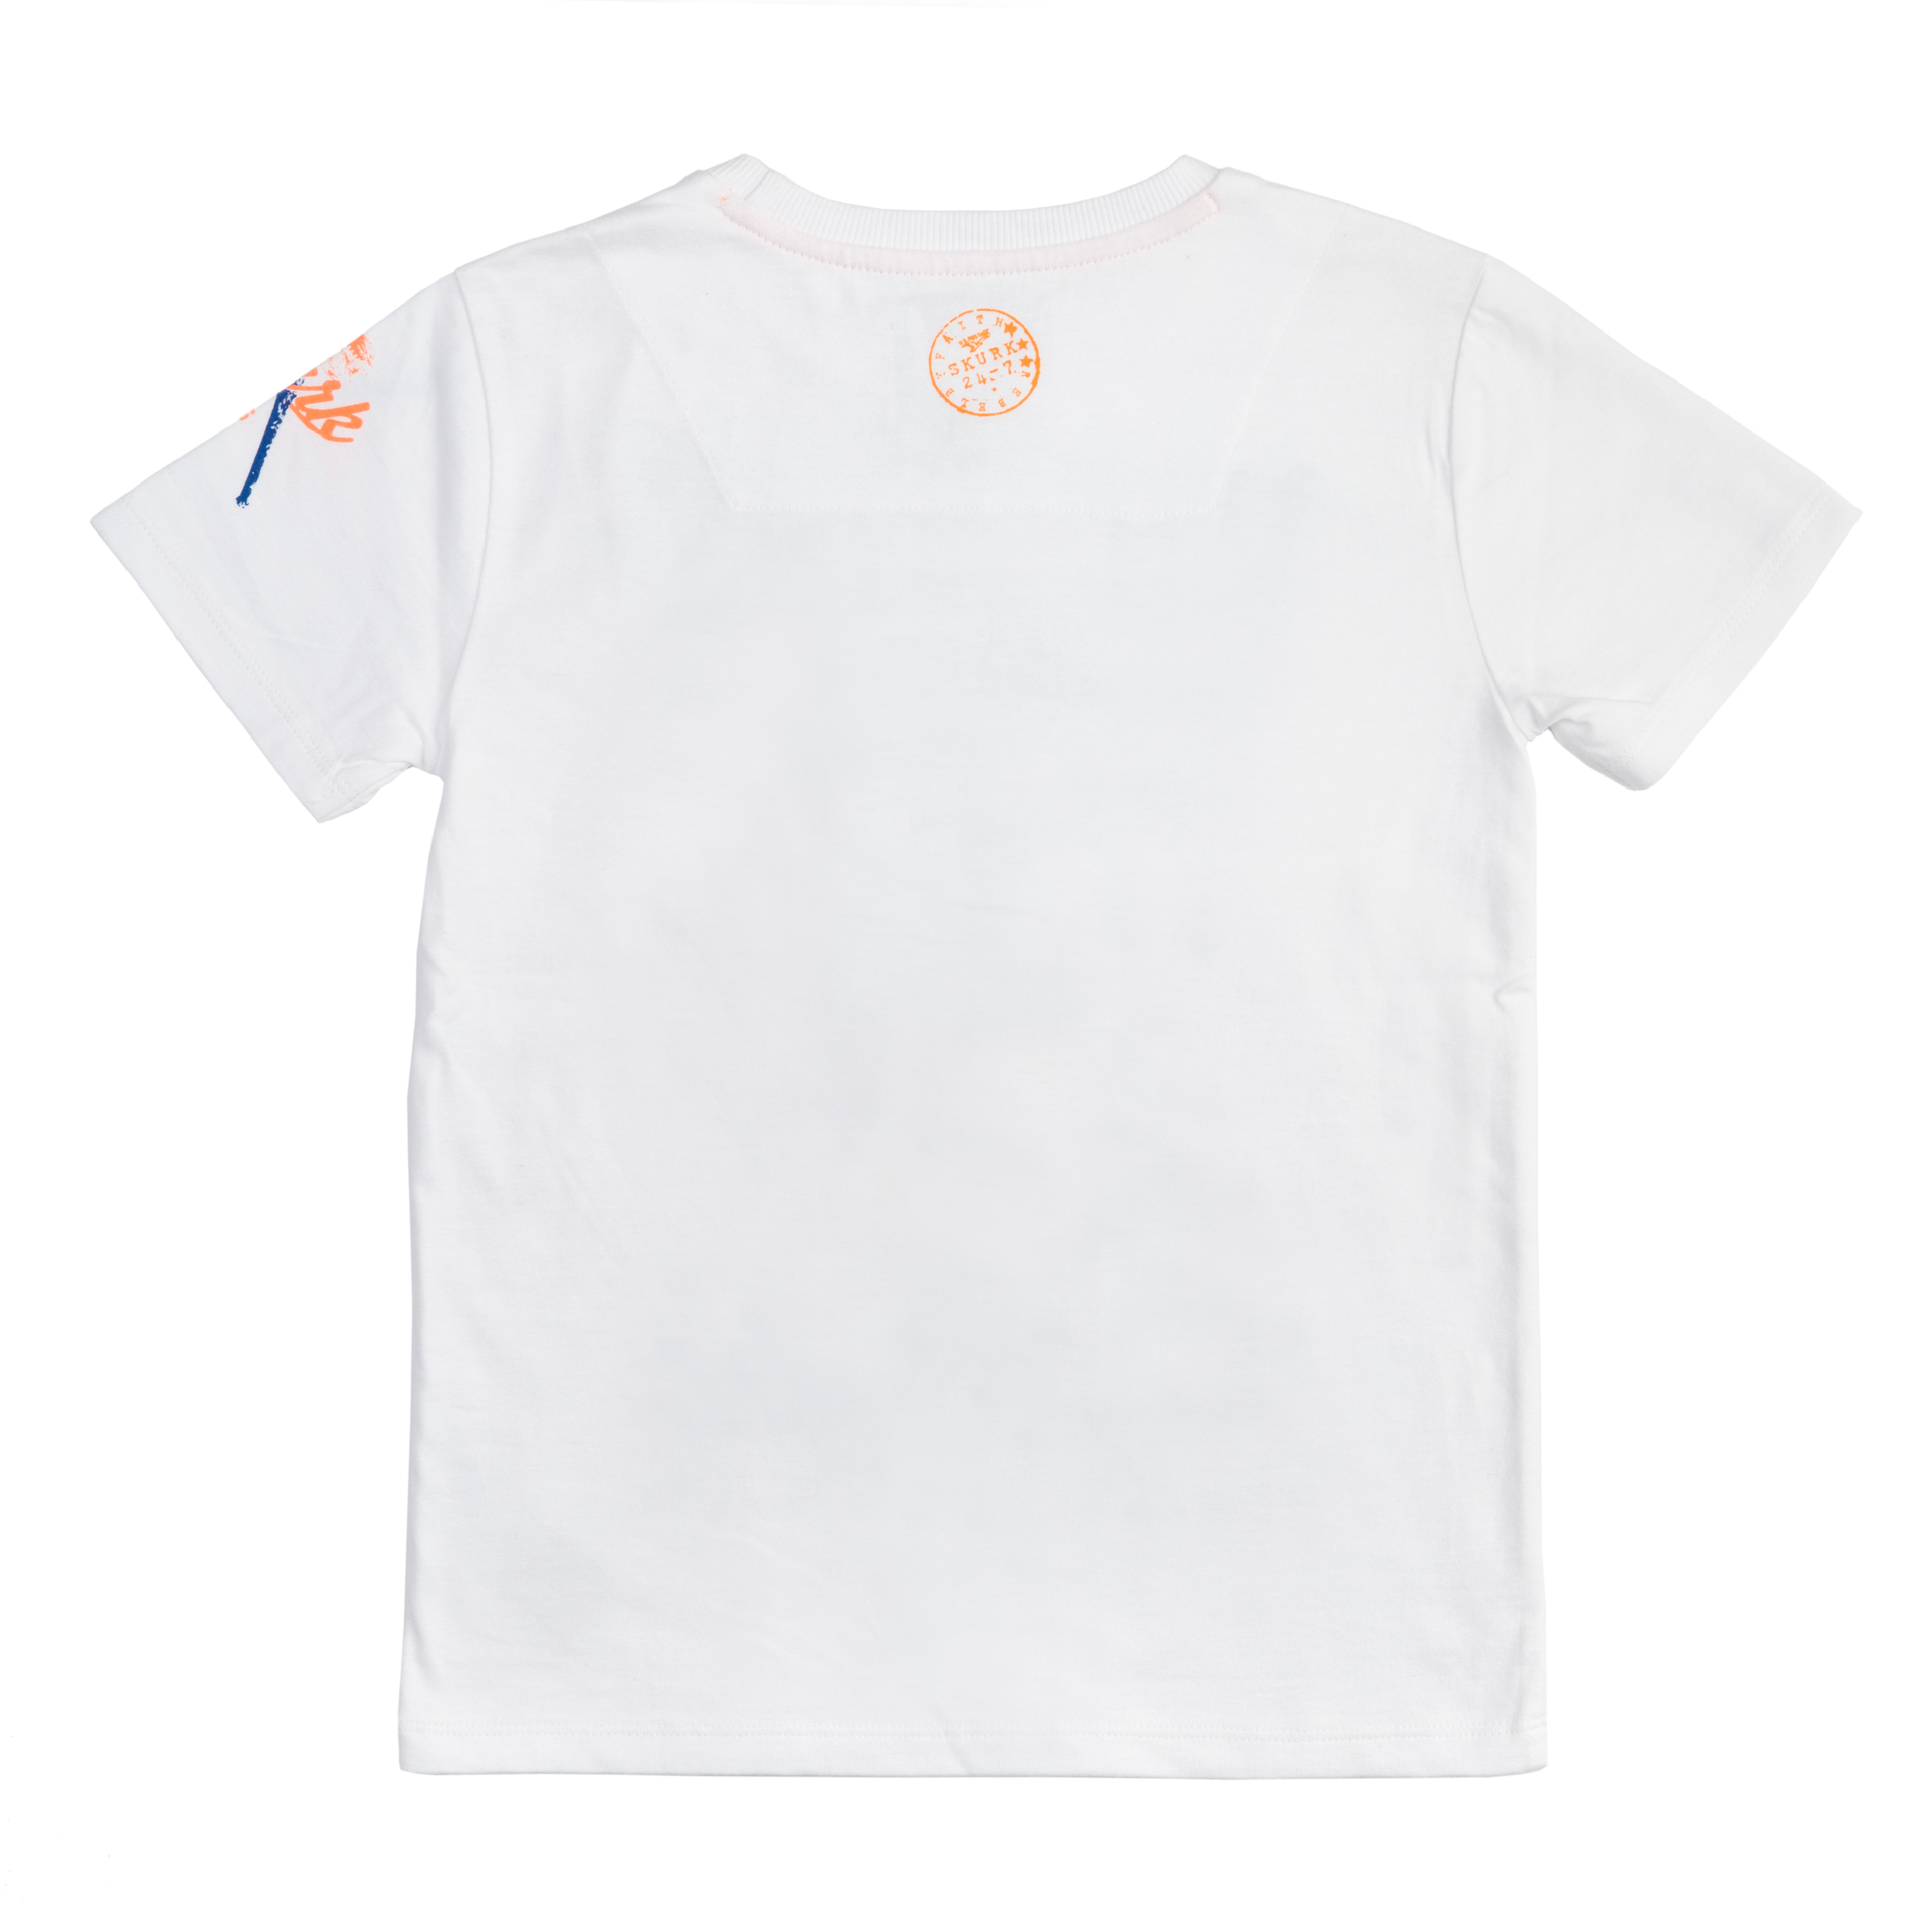 Jongens T-shirt Tobias van Skurk in de kleur White in maat 164, 170.